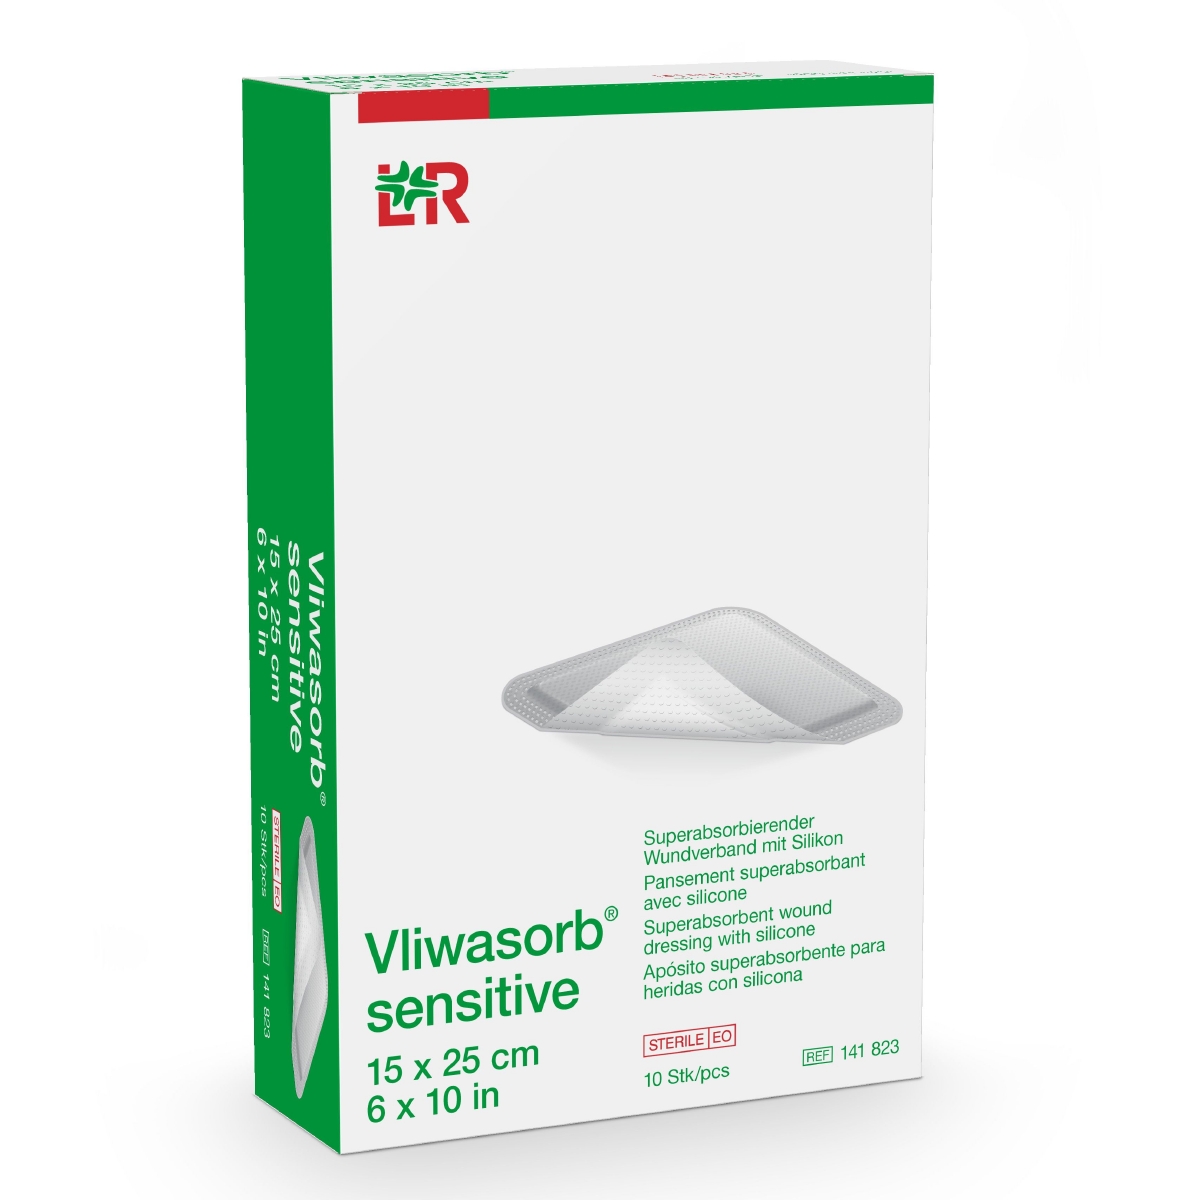 Vliwasorb® sensitive superabsorbierender Wundverband 15 cm x 25 cm